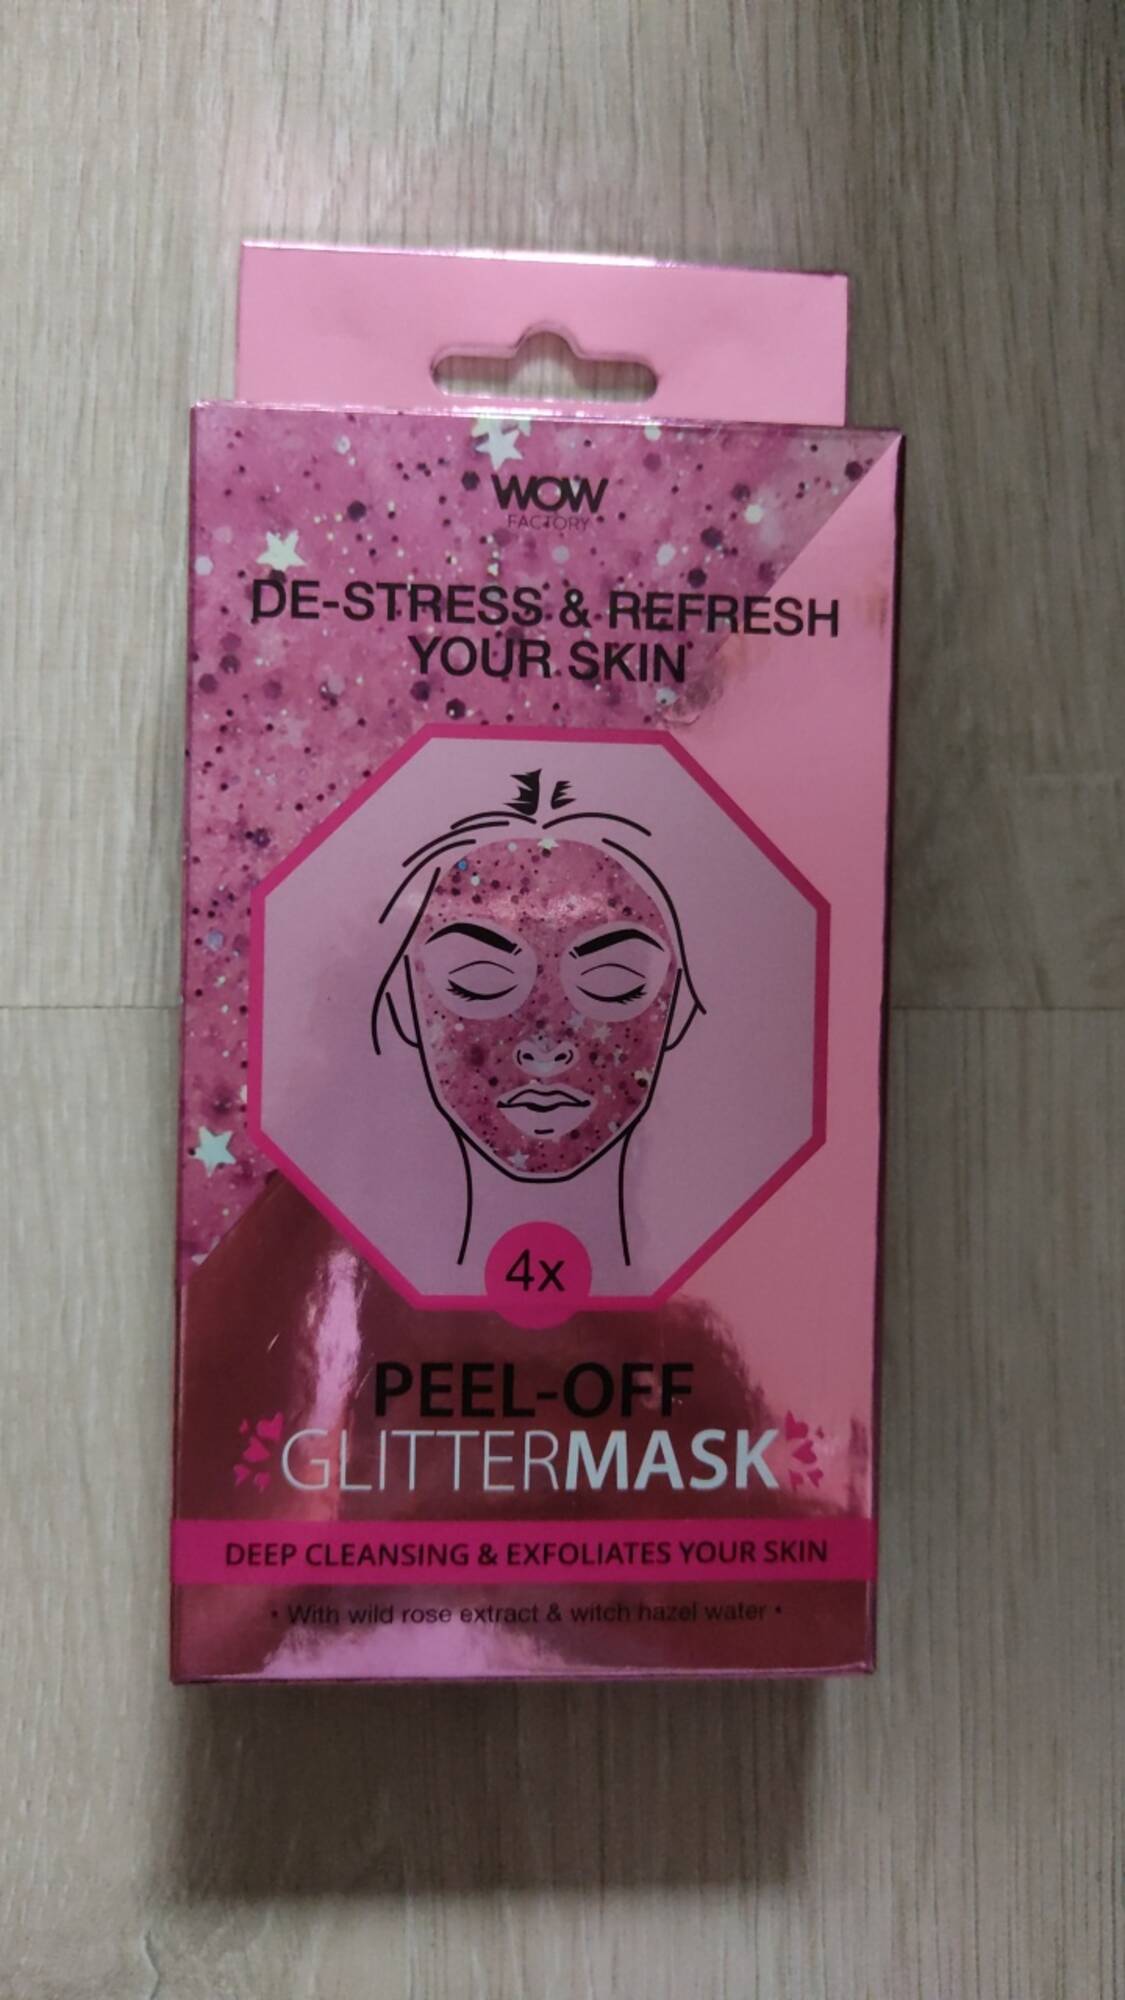 WOW FACTORY - De-stress & refresh your skin - Peel-off glittermask 